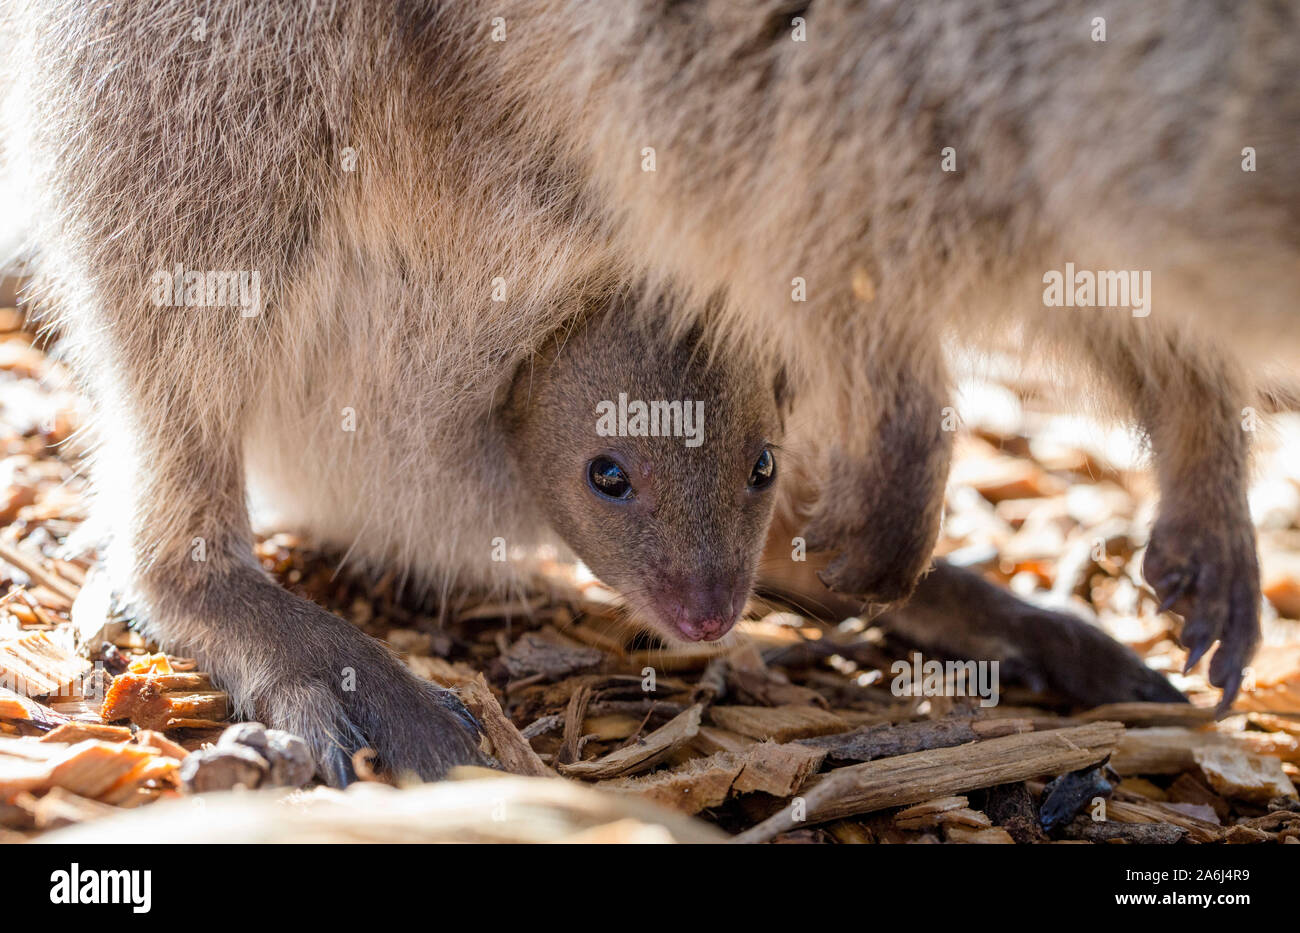 Baby Quokka (Setonix brachyurus) joey in mother's pouch, Rottnest Island, Western Australia Stock Photo